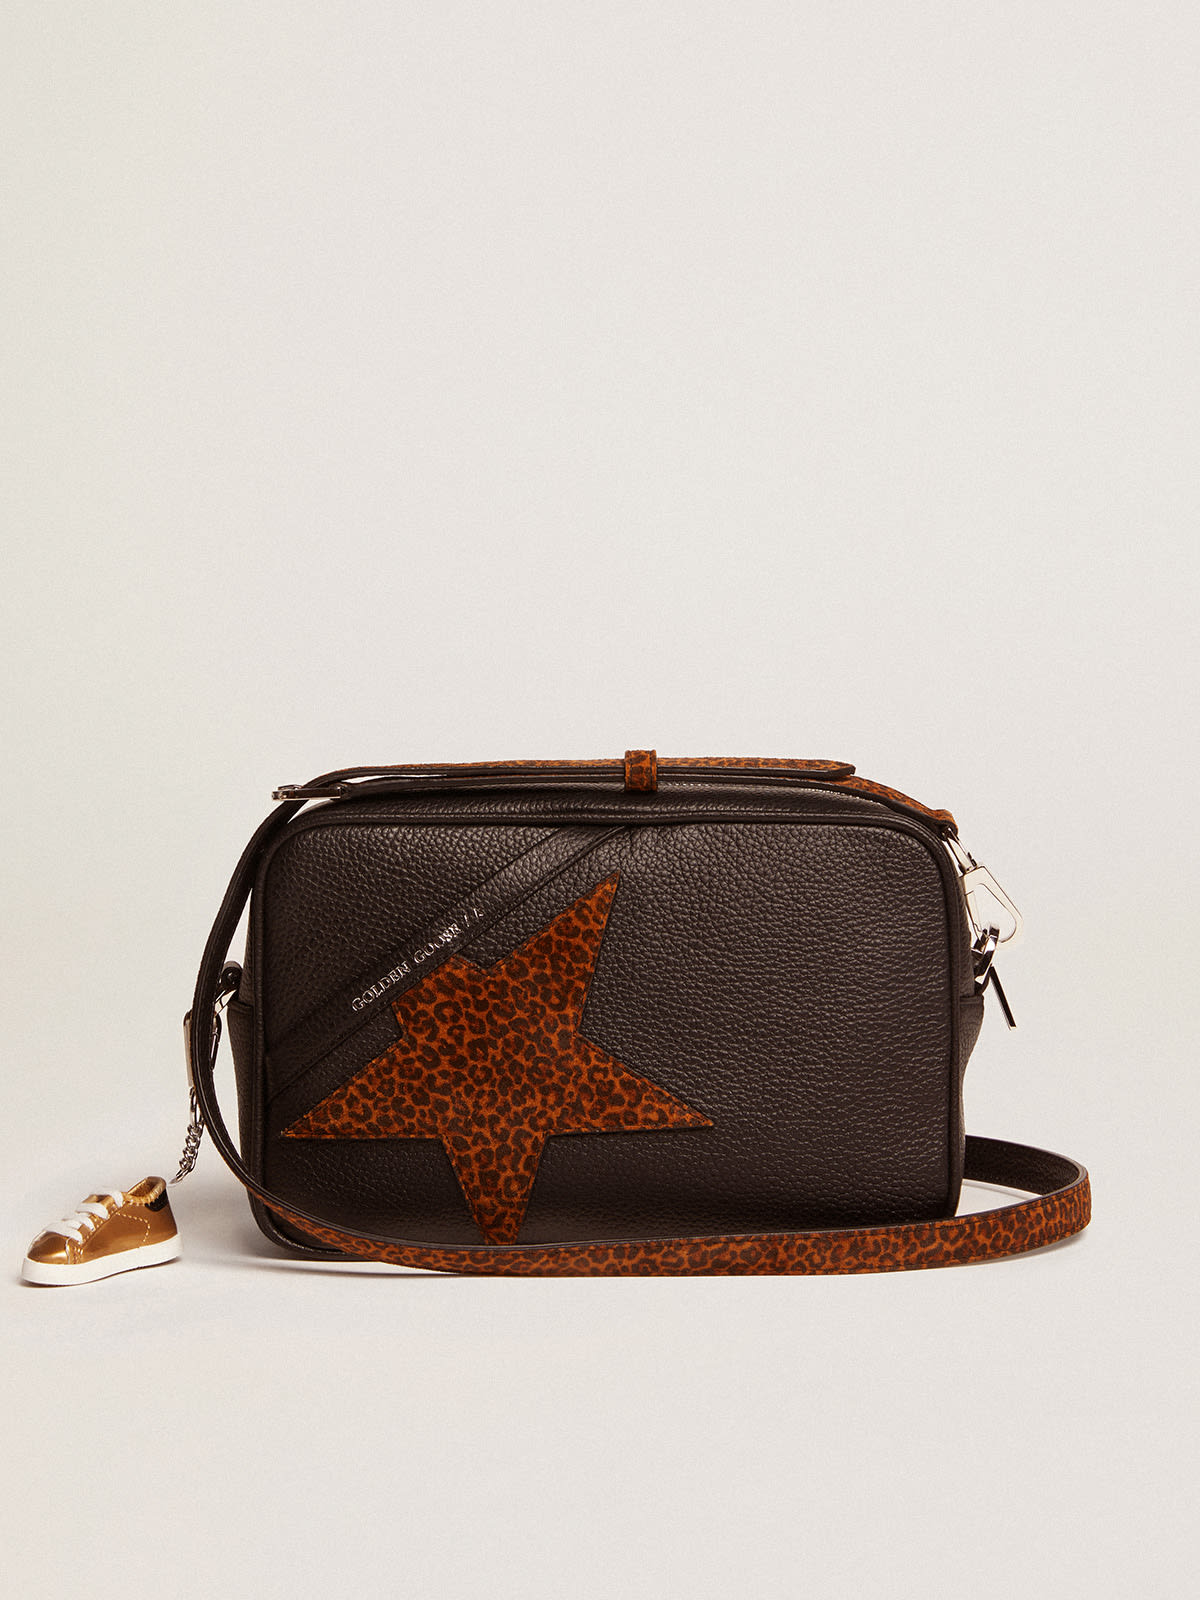 Golden Goose - Borsa Star Bag in pelle color testa di moro e stella in suede leopardato in 